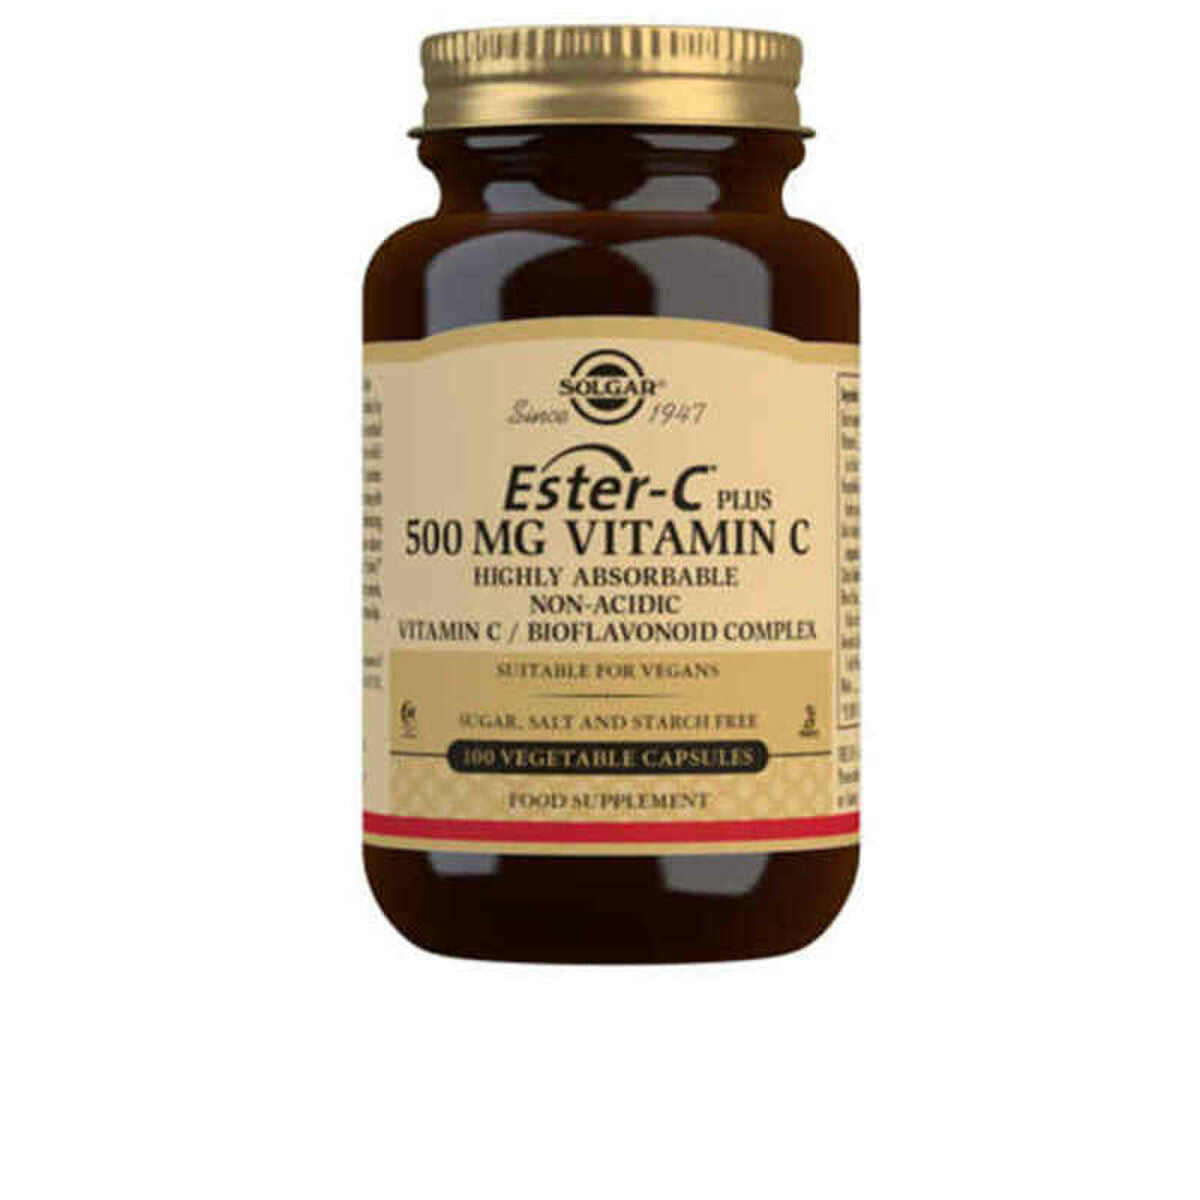 Ester-C Plus Vitamine C Solgar (100 uds)